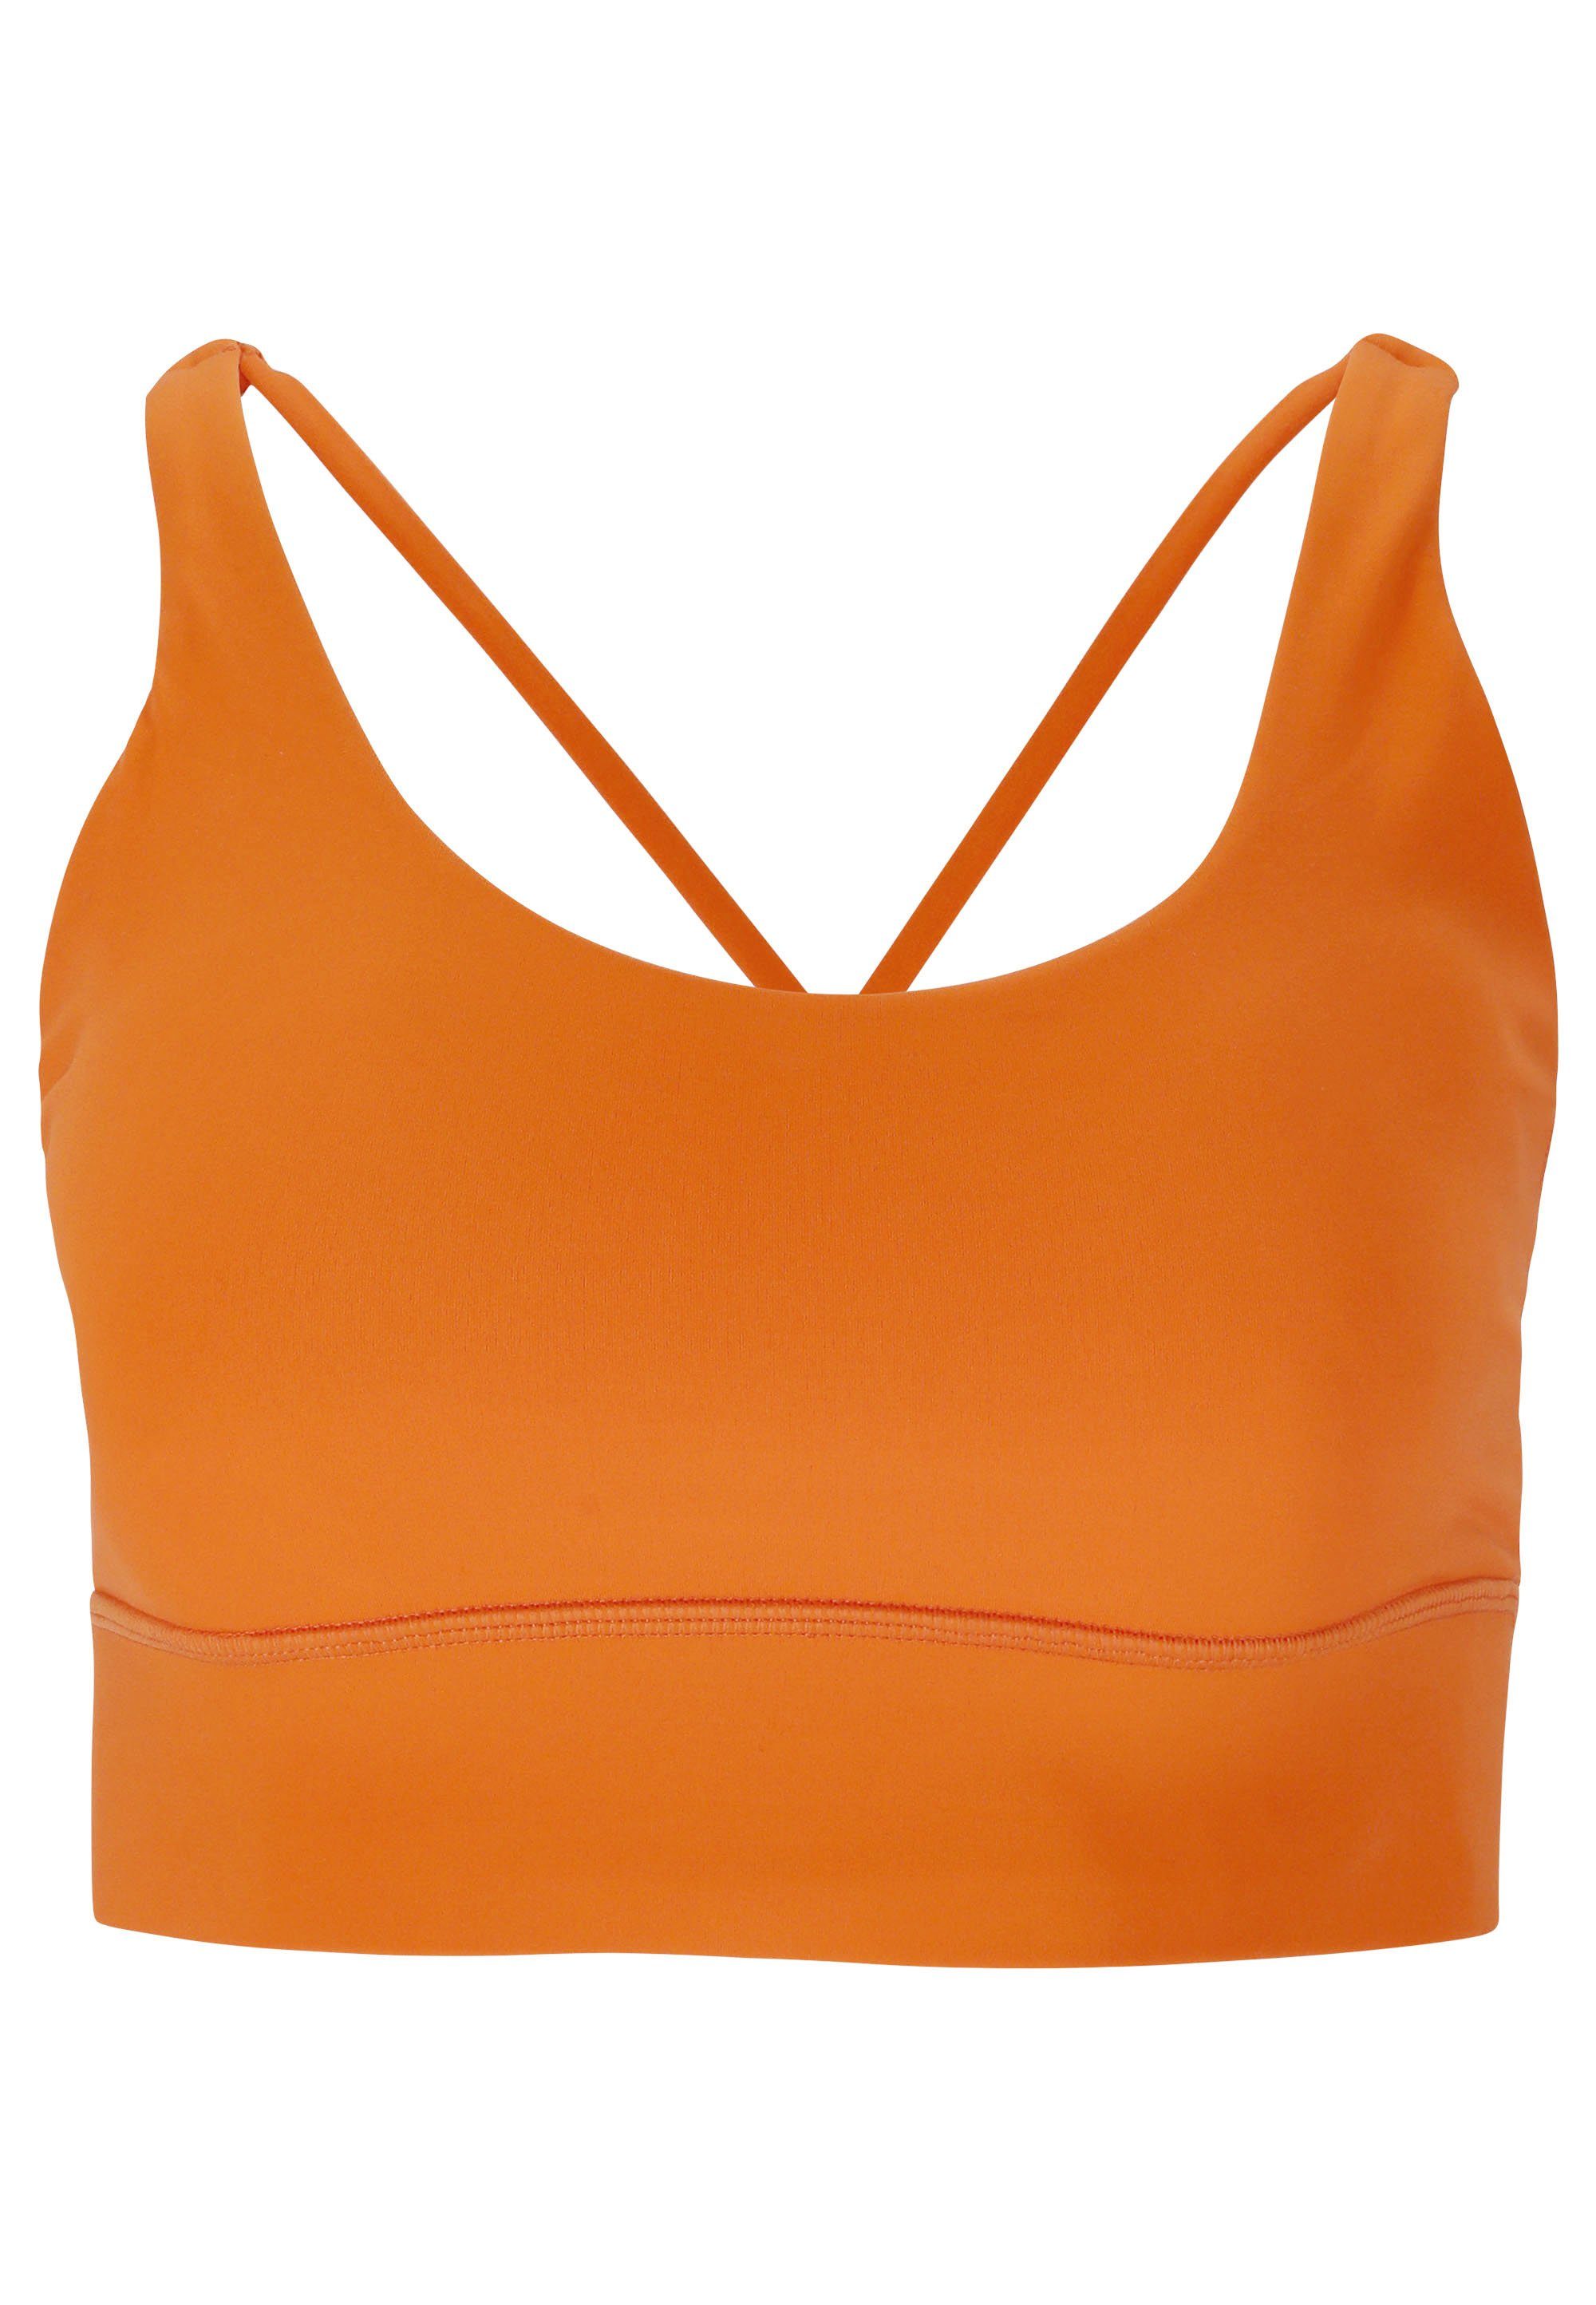 feuchtigkeitsregulierendem Gaby aus orange ATHLECIA Material Sport-BH